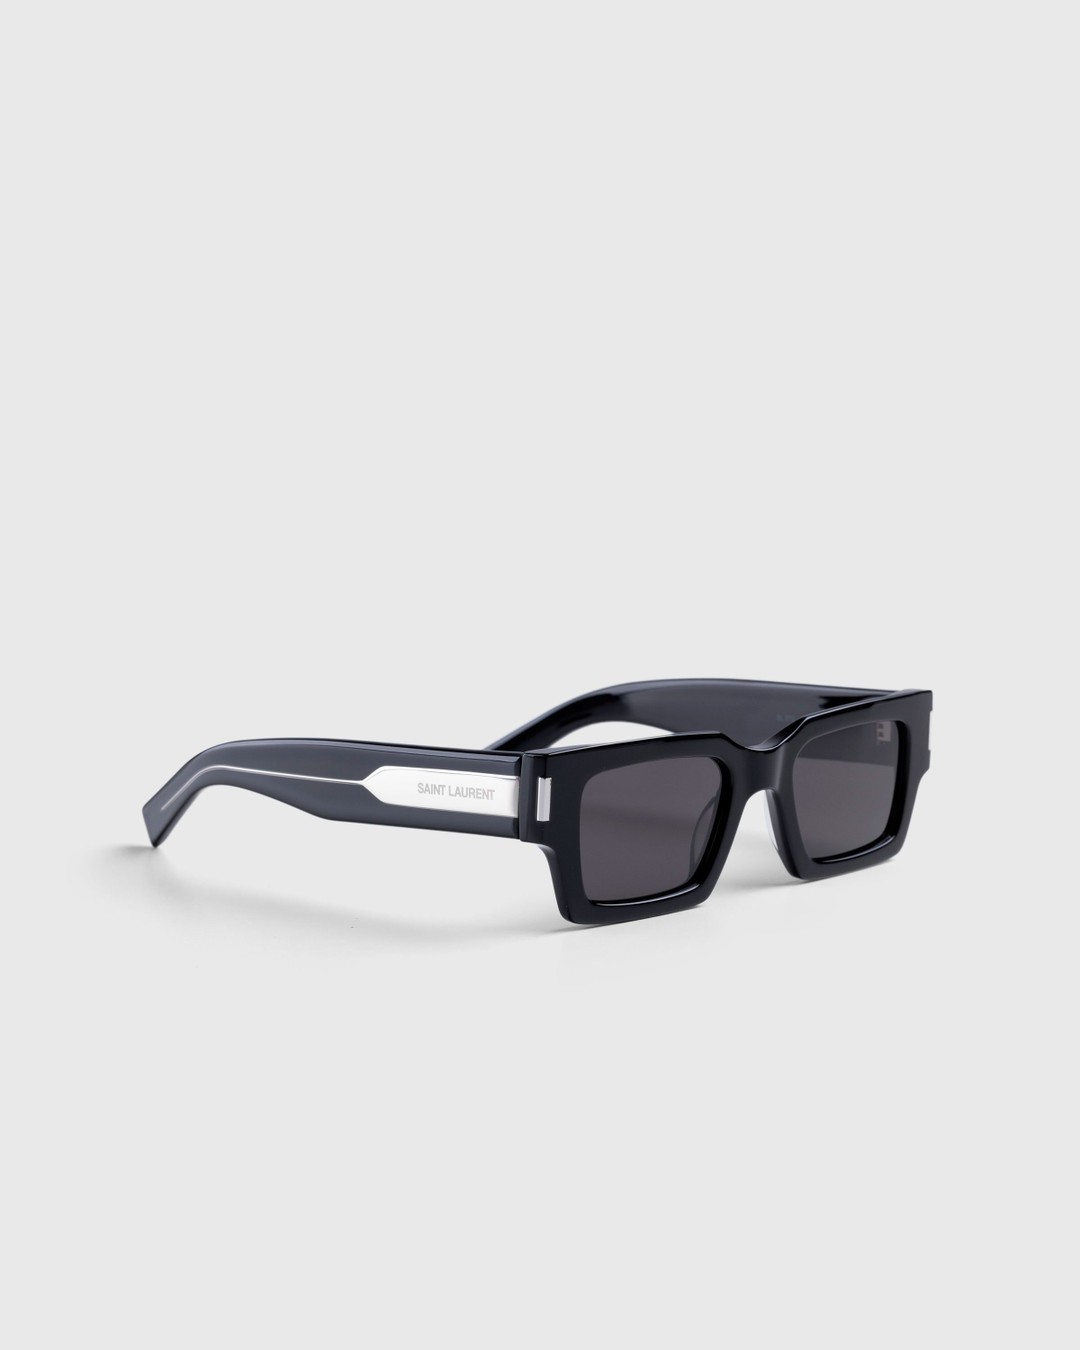 Saint Laurent – SL 572 Square Frame Sunglasses Black/Crystal - Eyewear - Multi - Image 2